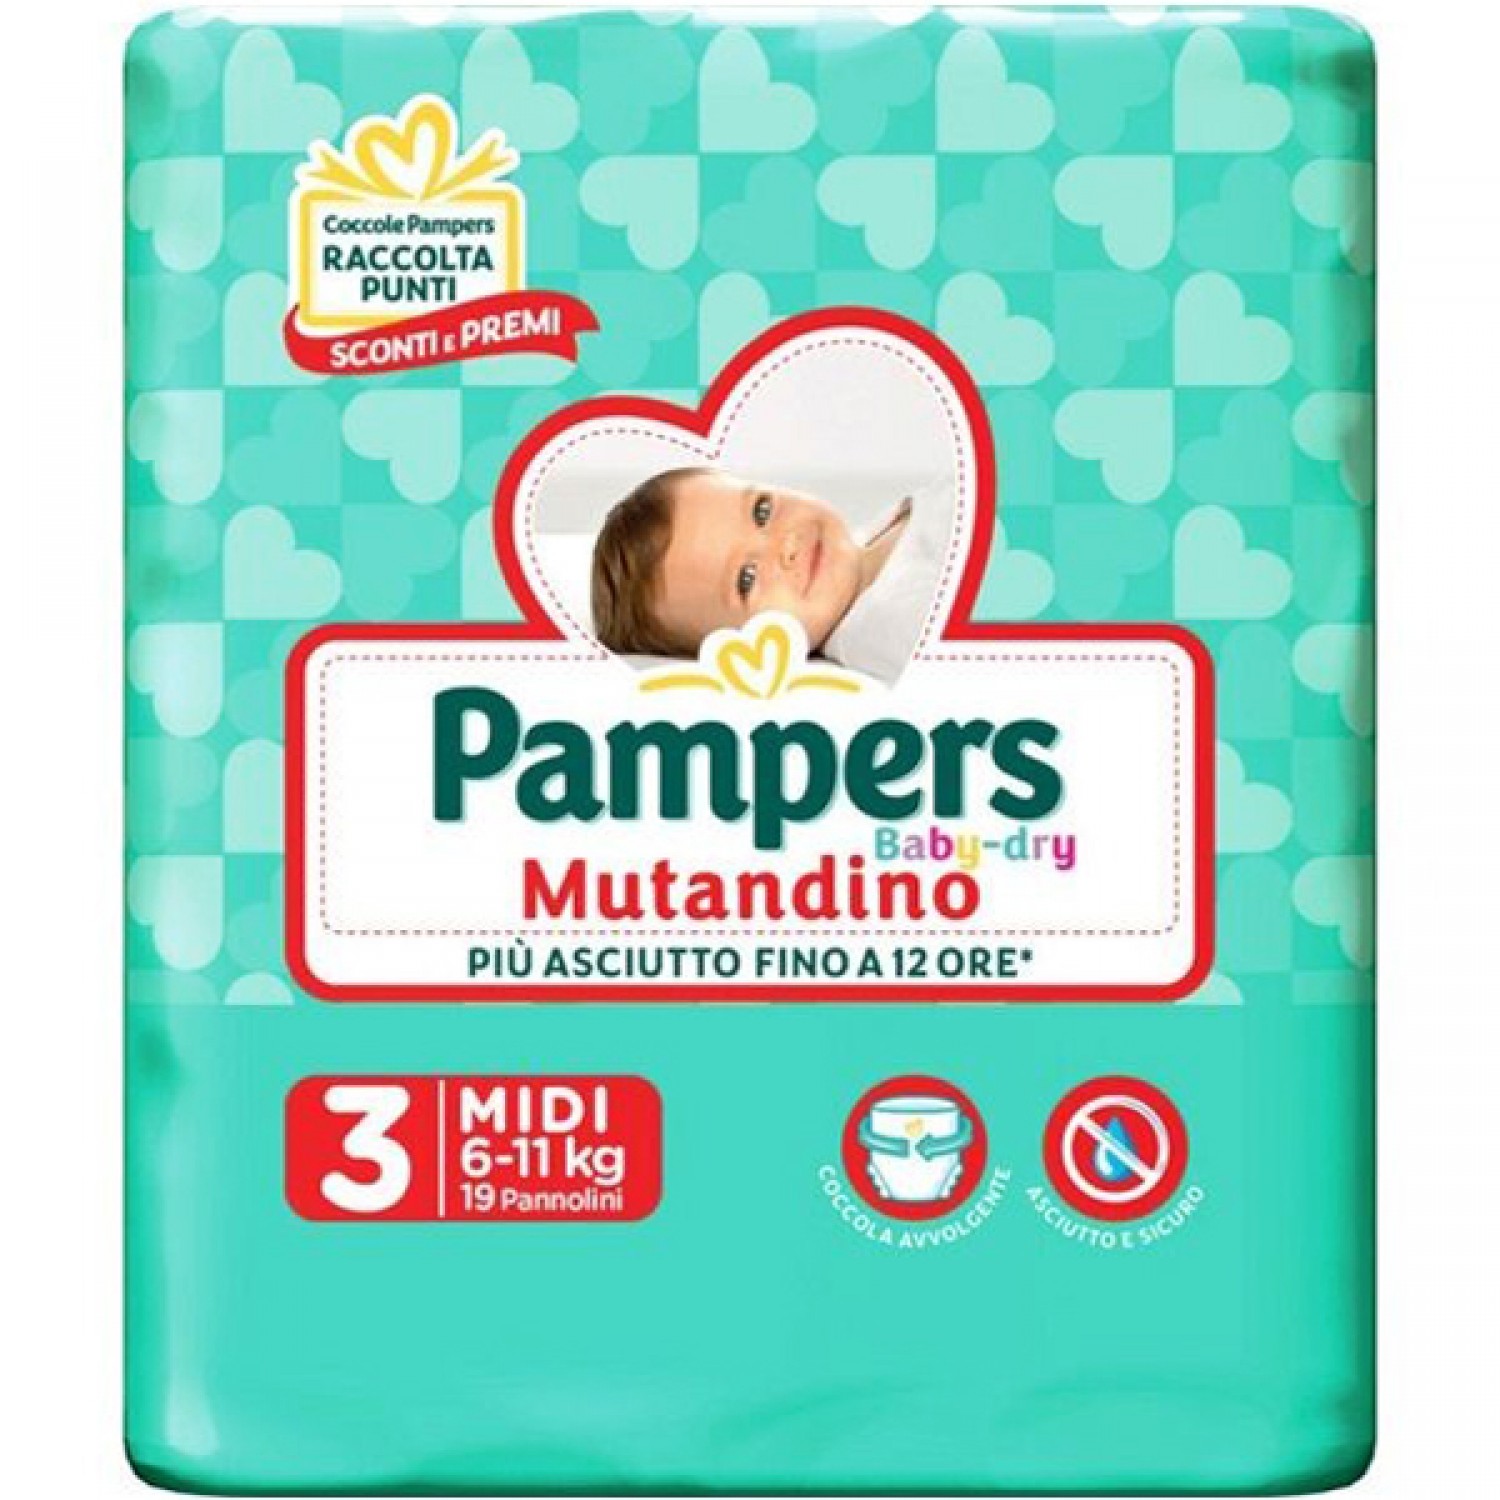 Image of Pampers Baby Dry Luiers 3 MIDI 6-11 Kg (19 stuks) 